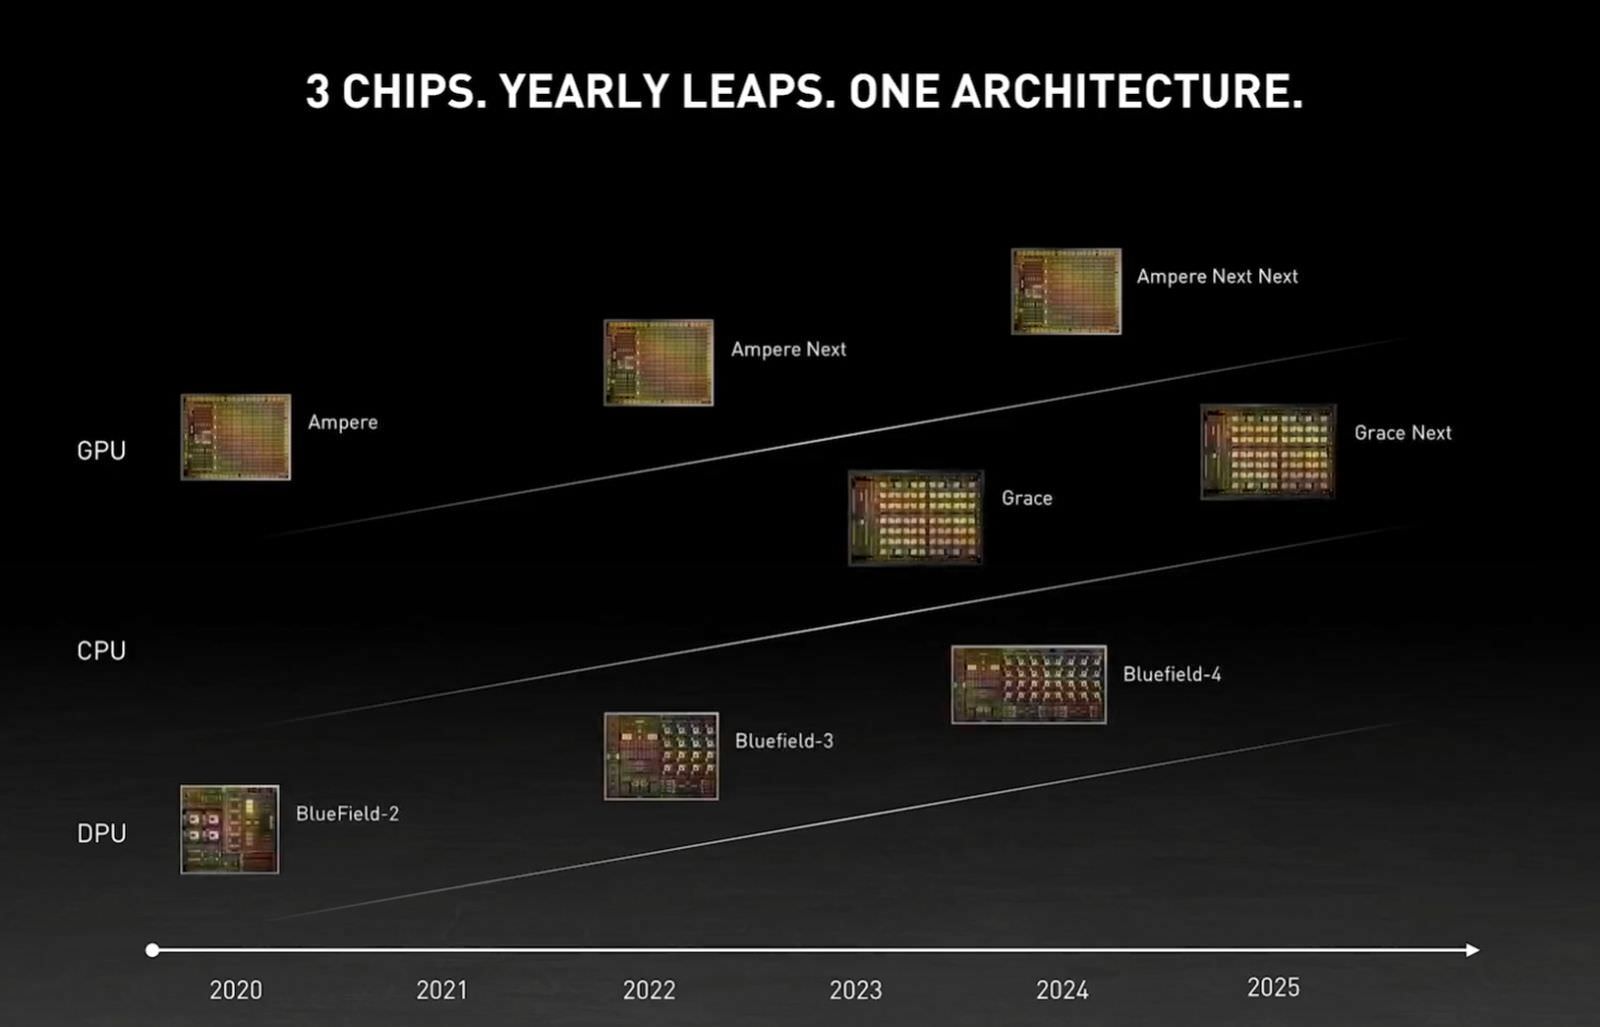 اسلاید معماری گرافیکی Ampere Next انویدیا در مراسم GTC 2021